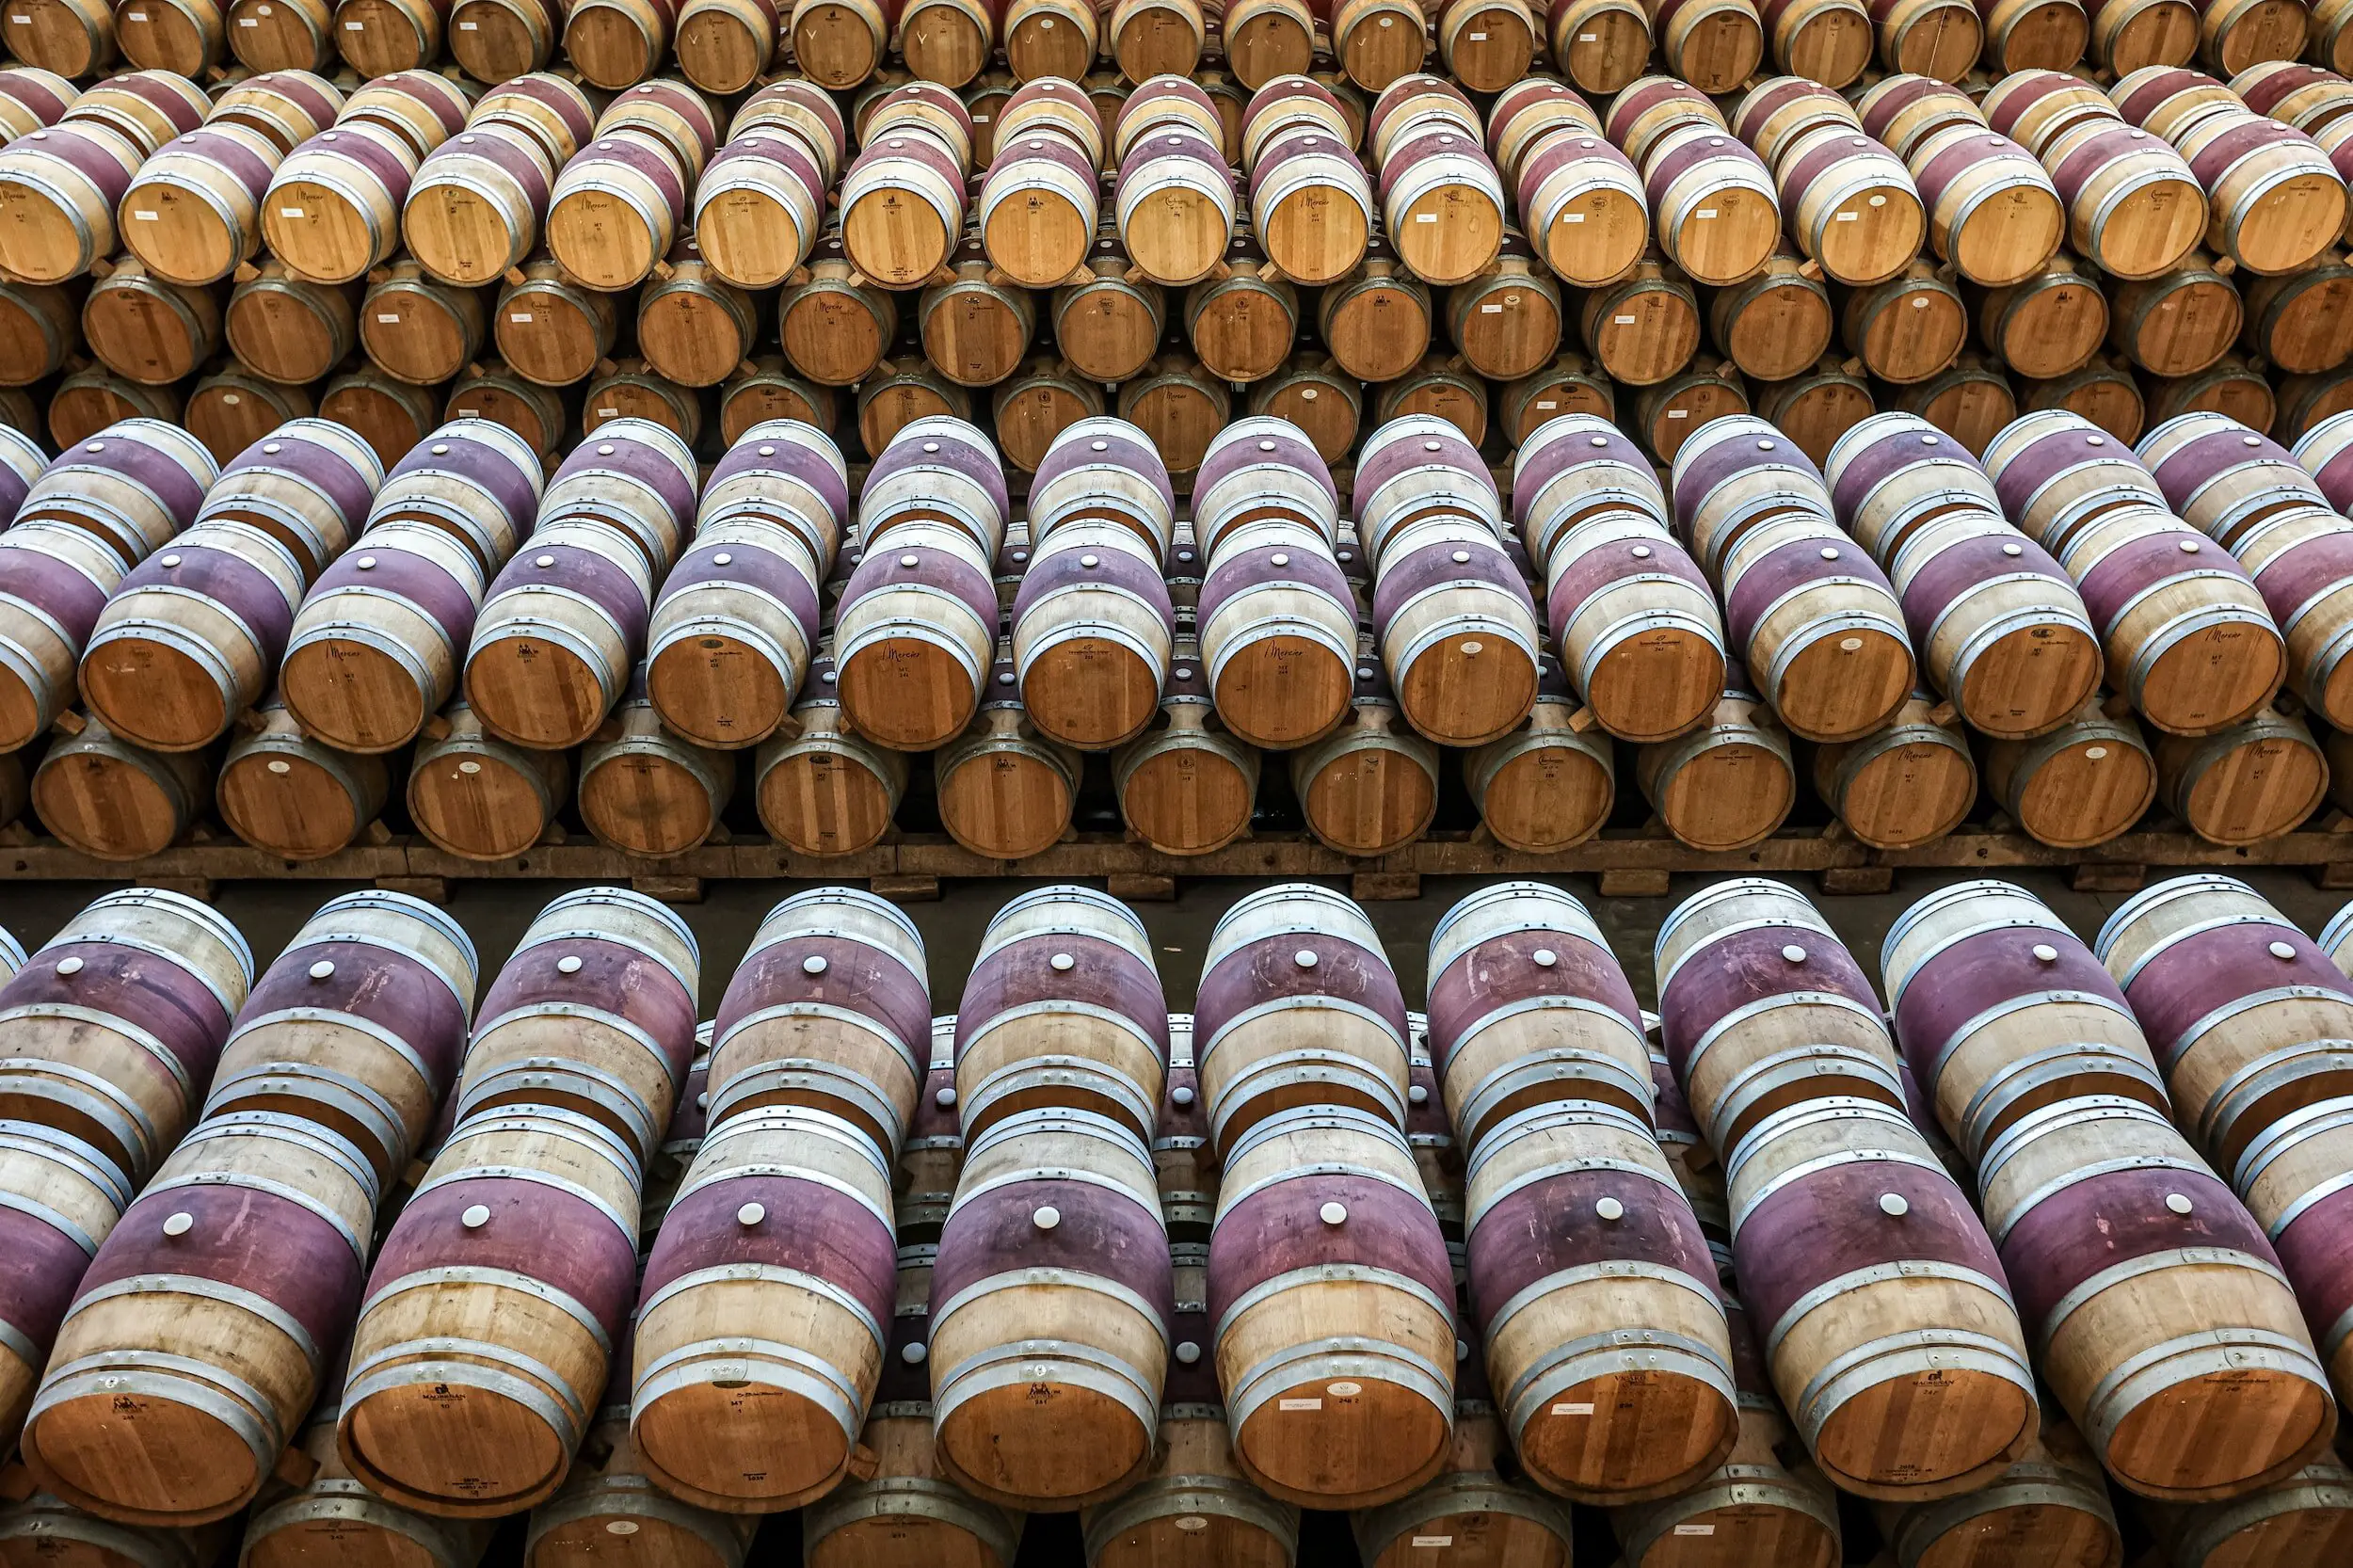 wine barrels - termpranillo wine guide